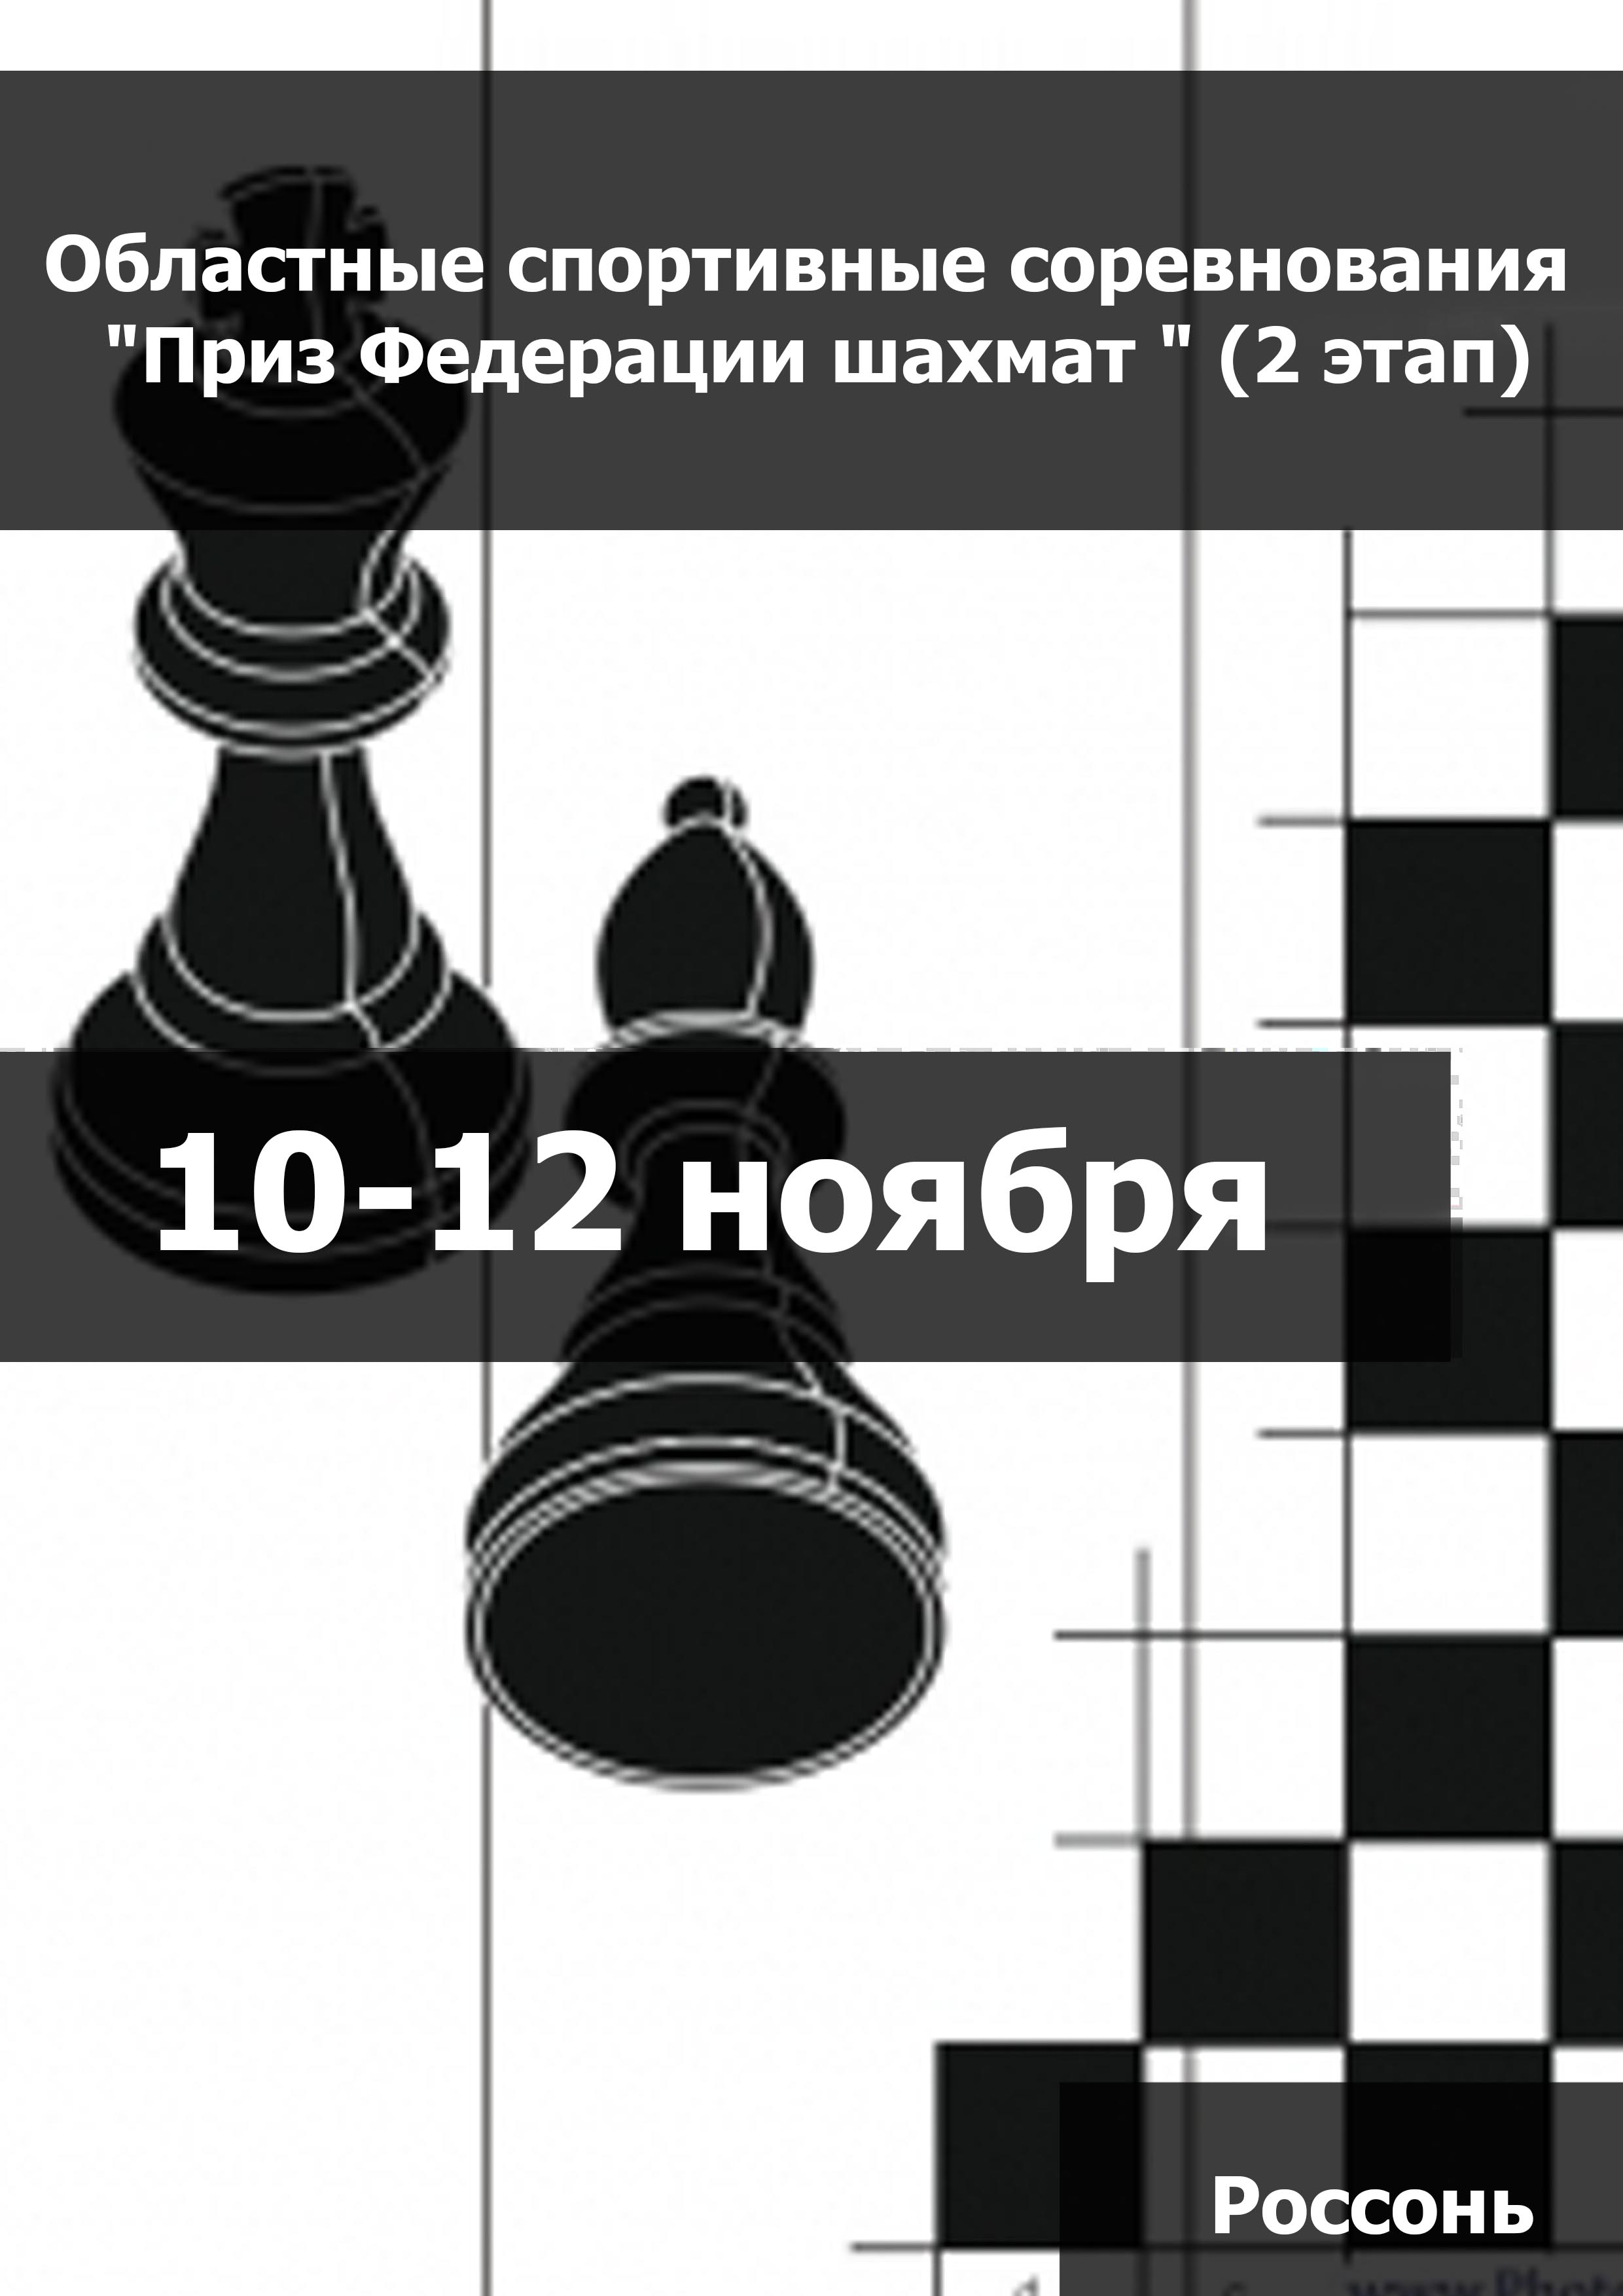 Областные спортивные соревнования "Приз Федерации шахмат " (2 этап) (мальчики, девочки до 11 лет) 10  መገለጫዎ ጋር ይገናኛሉ ግምገማ
 2023  ዓመት
 